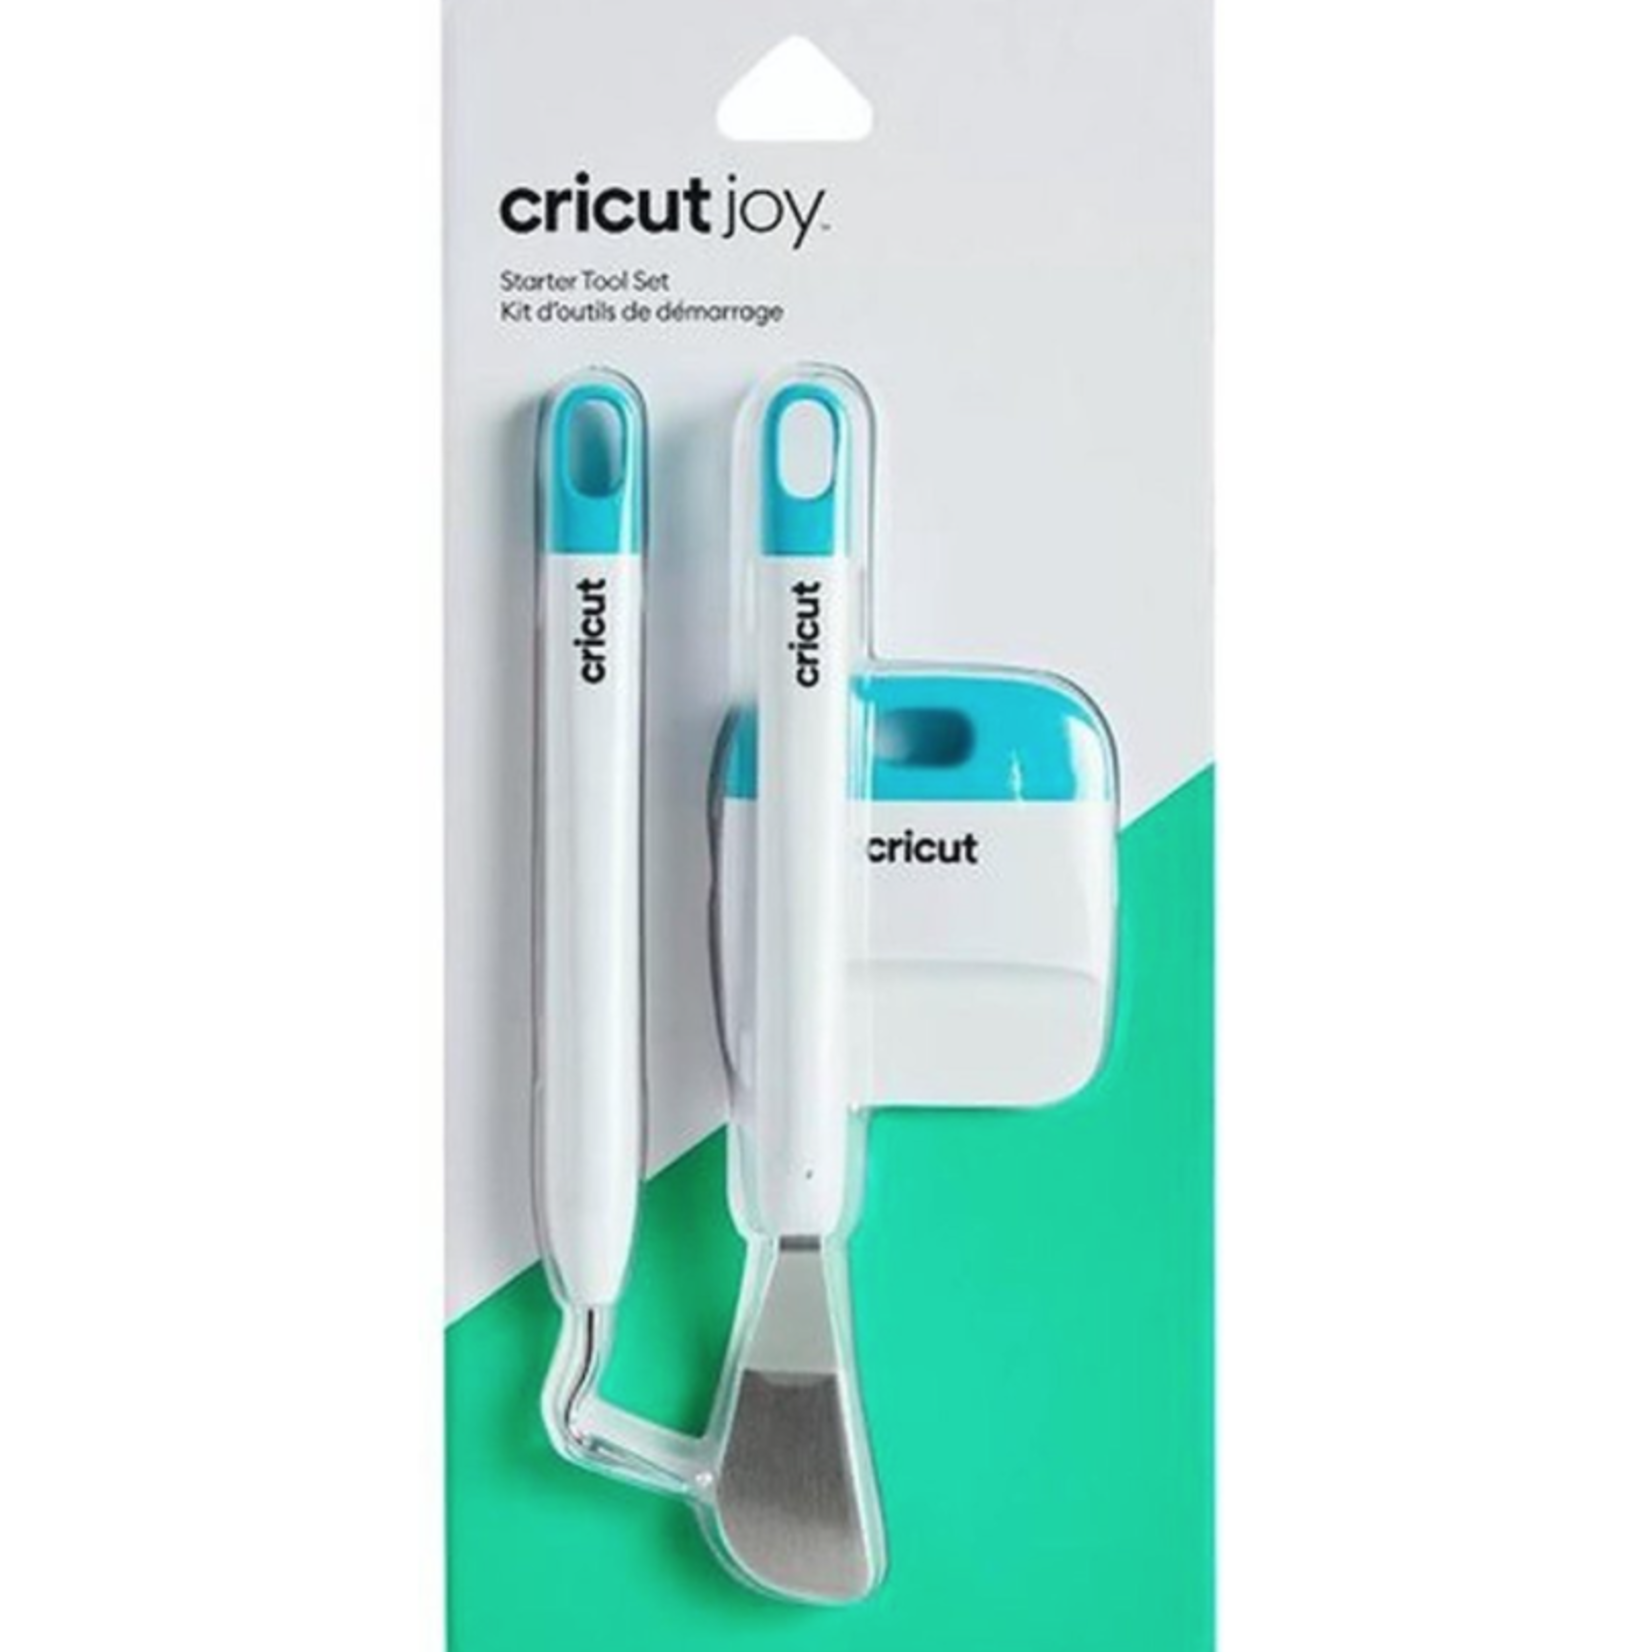 Cricut Joy starter tools